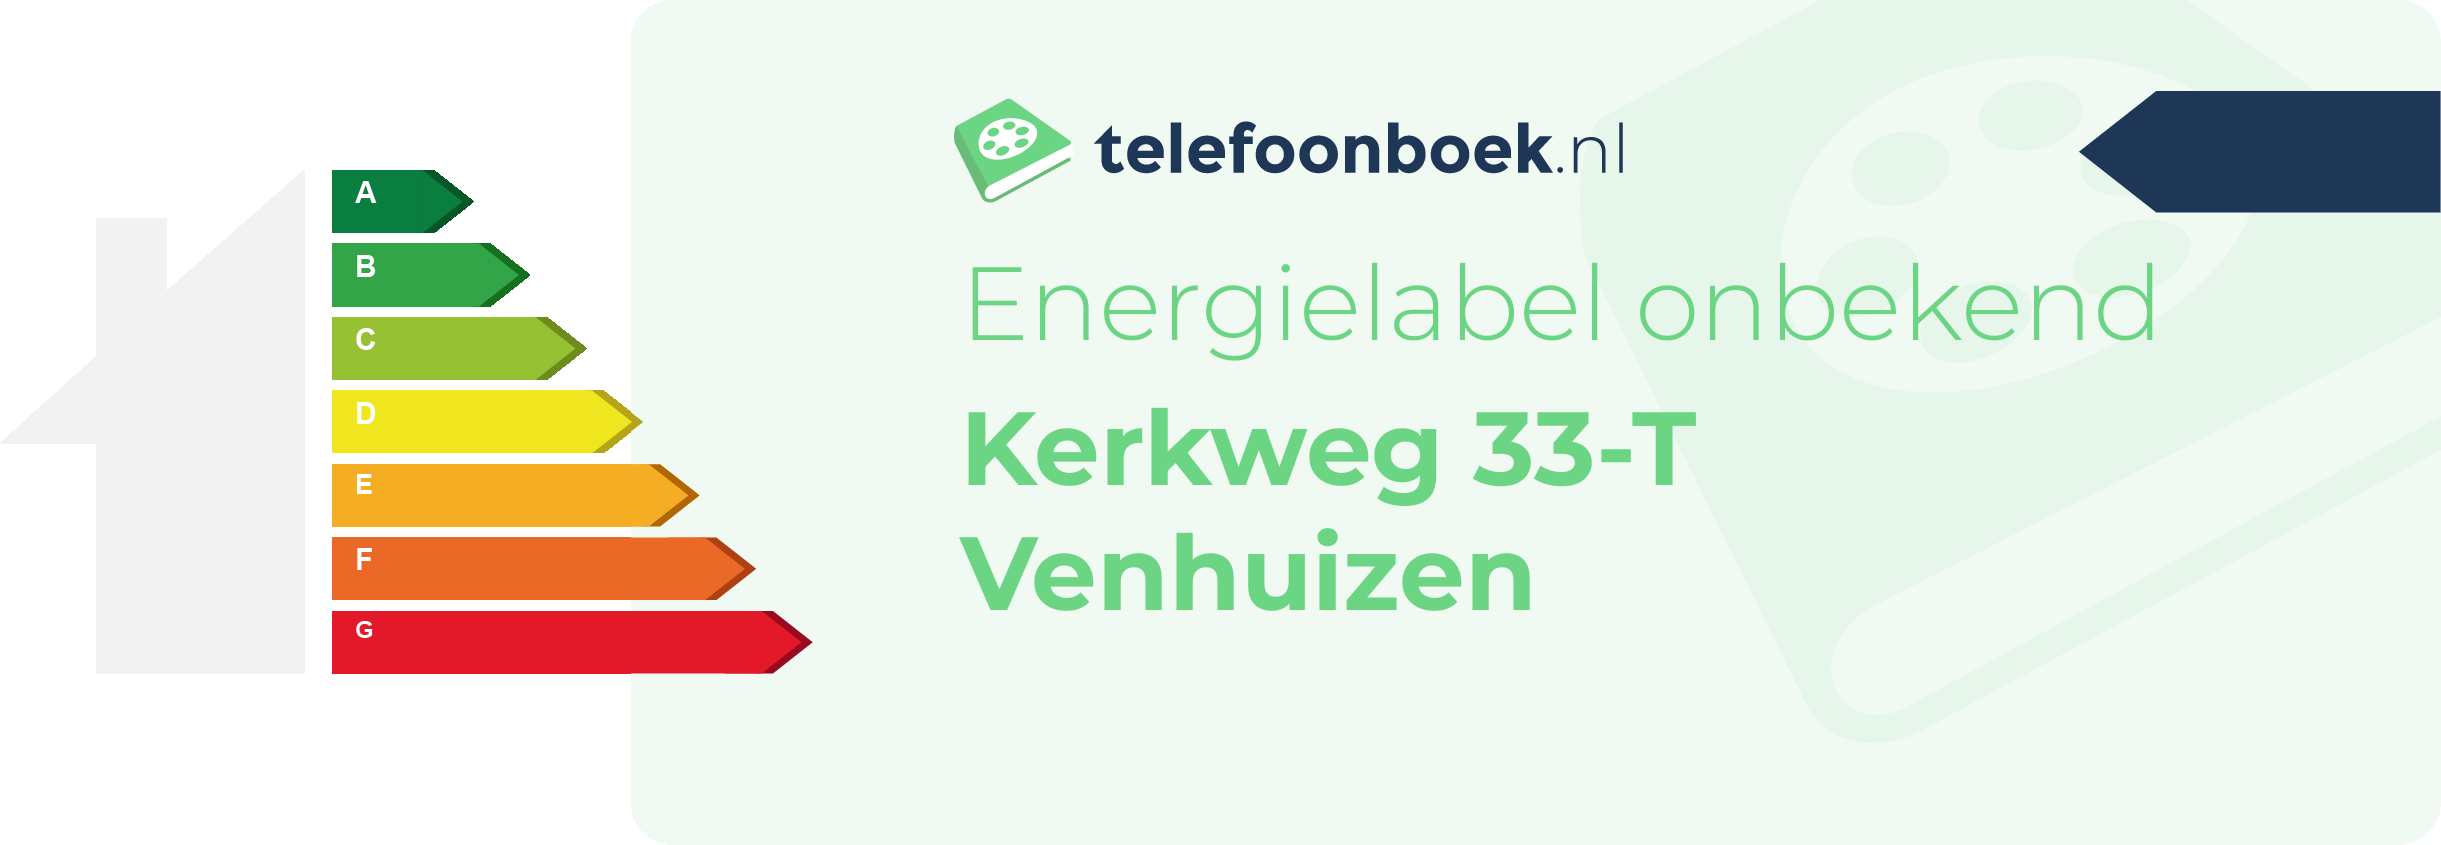 Energielabel Kerkweg 33-T Venhuizen